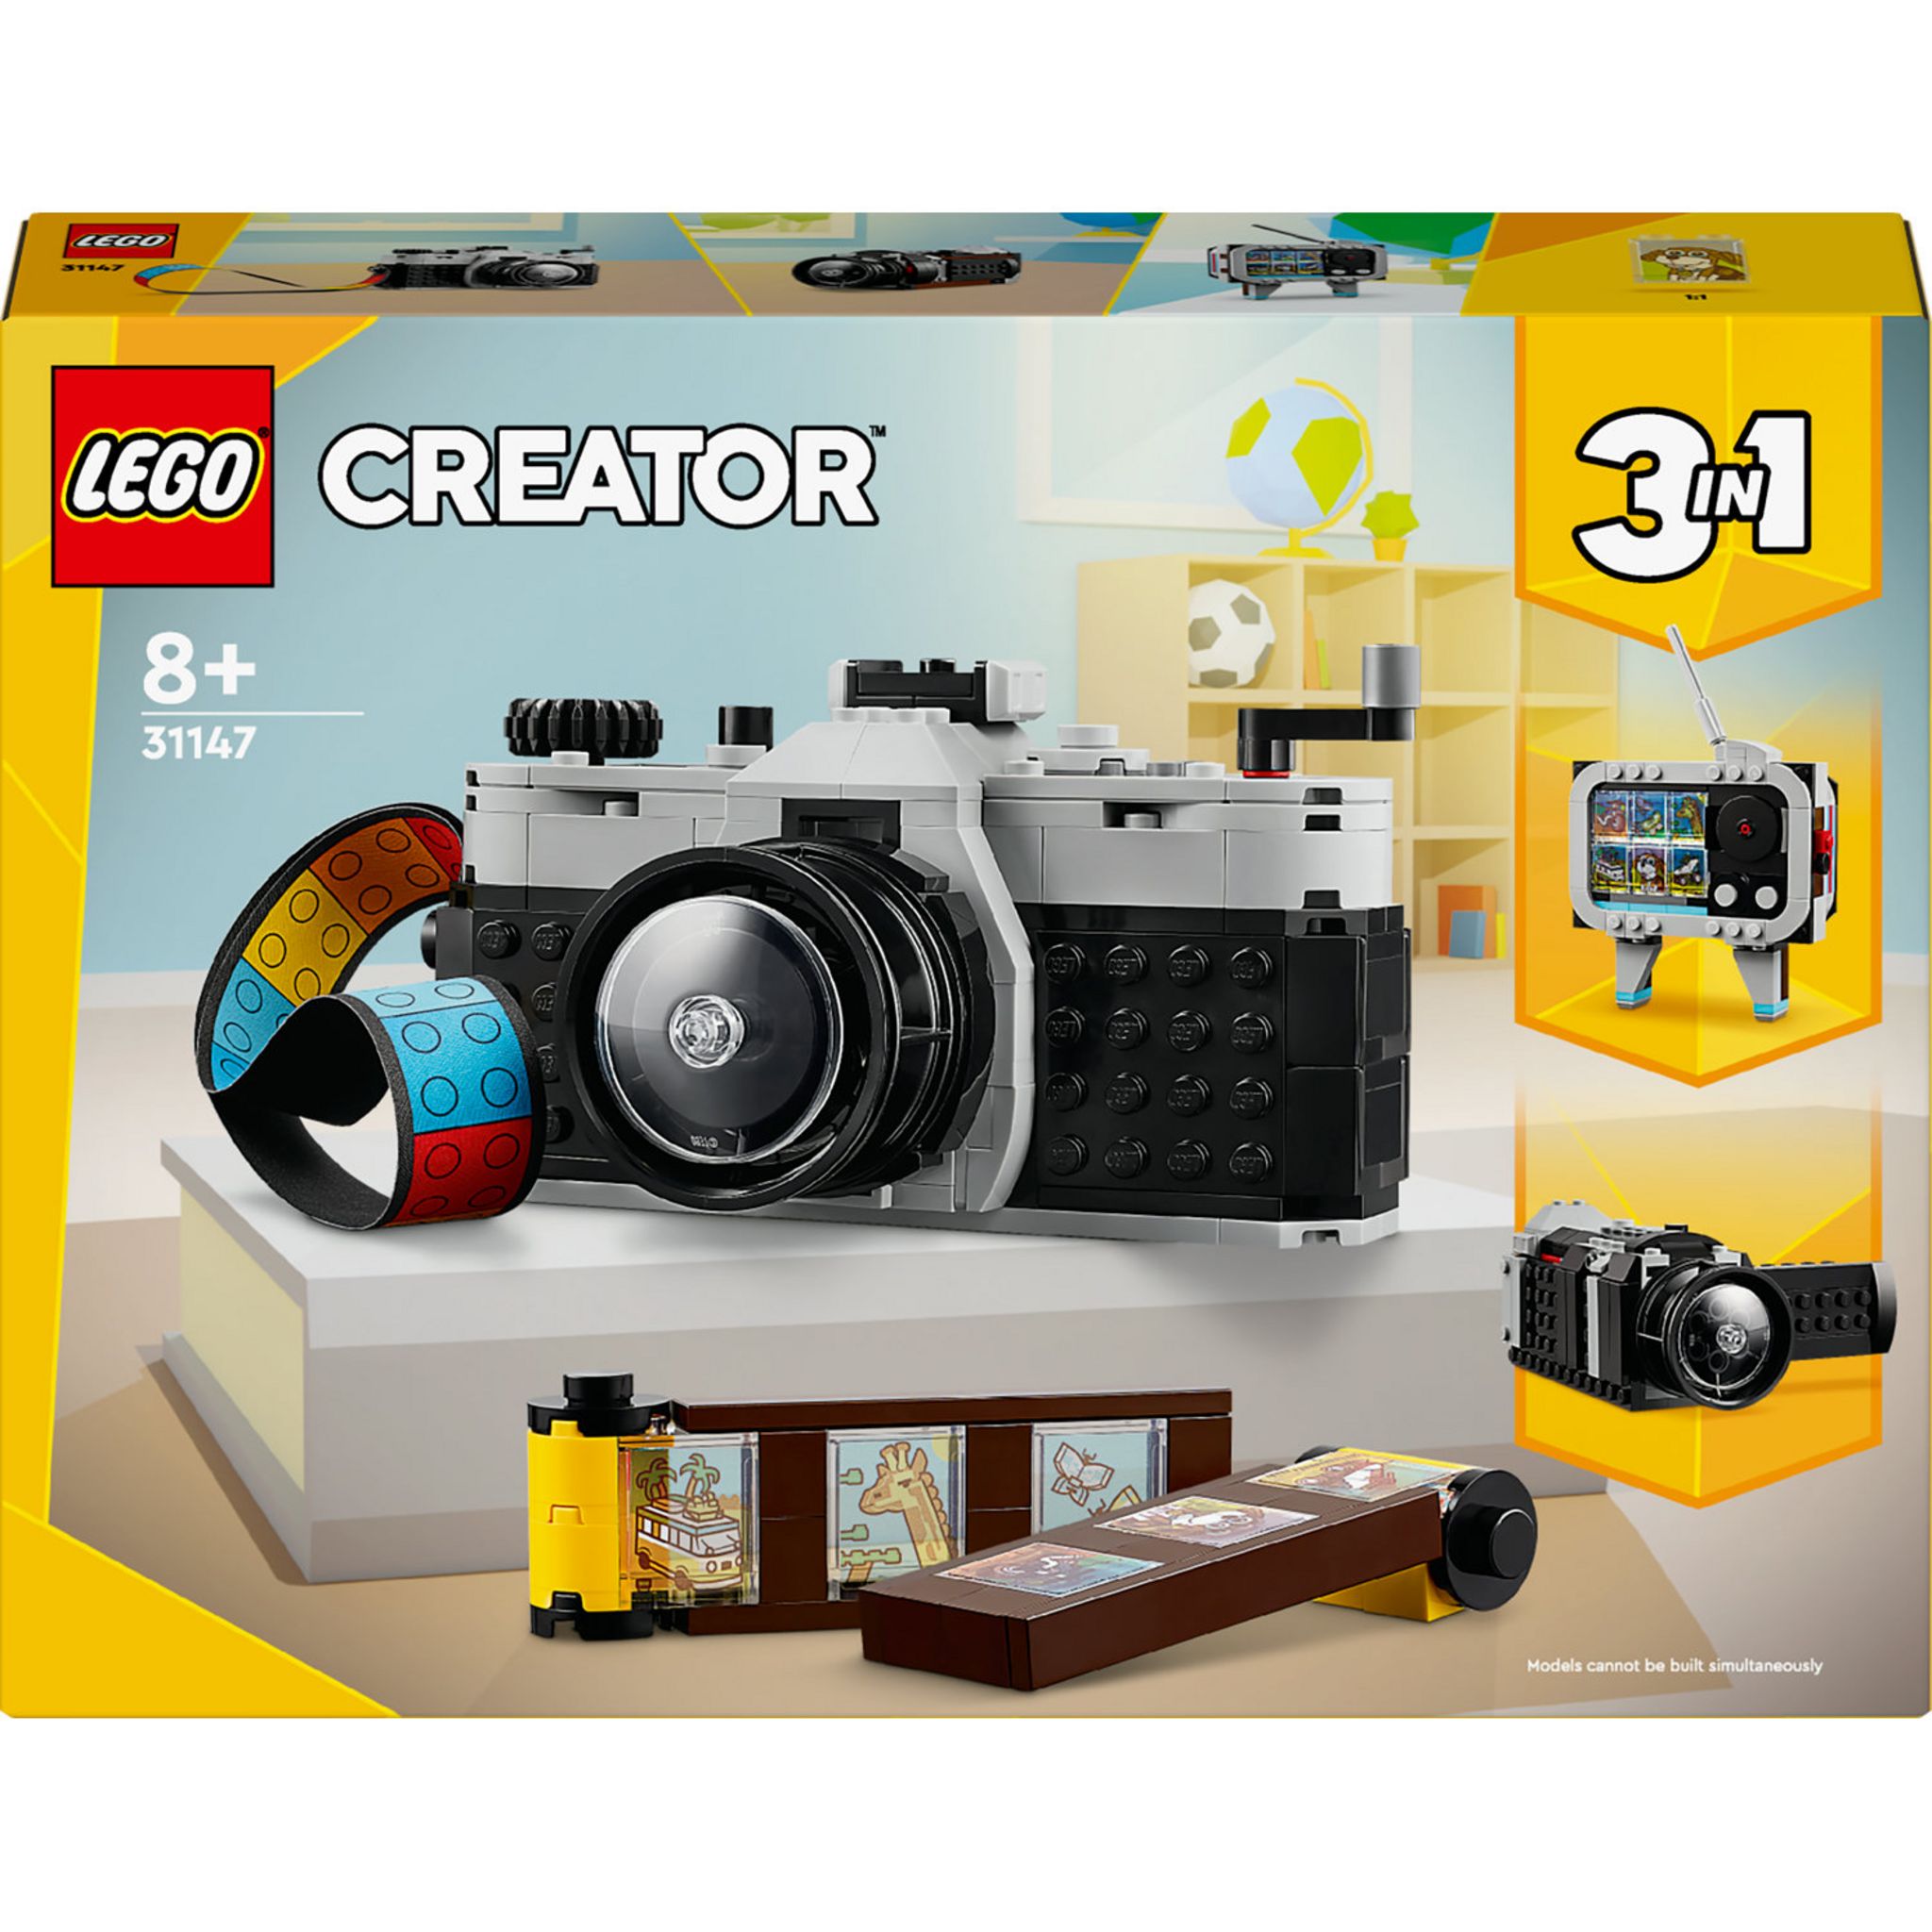 LEGO CREATOR 31047, 3 en 1, garçon âge 7-12 ans Complet 230 pièces